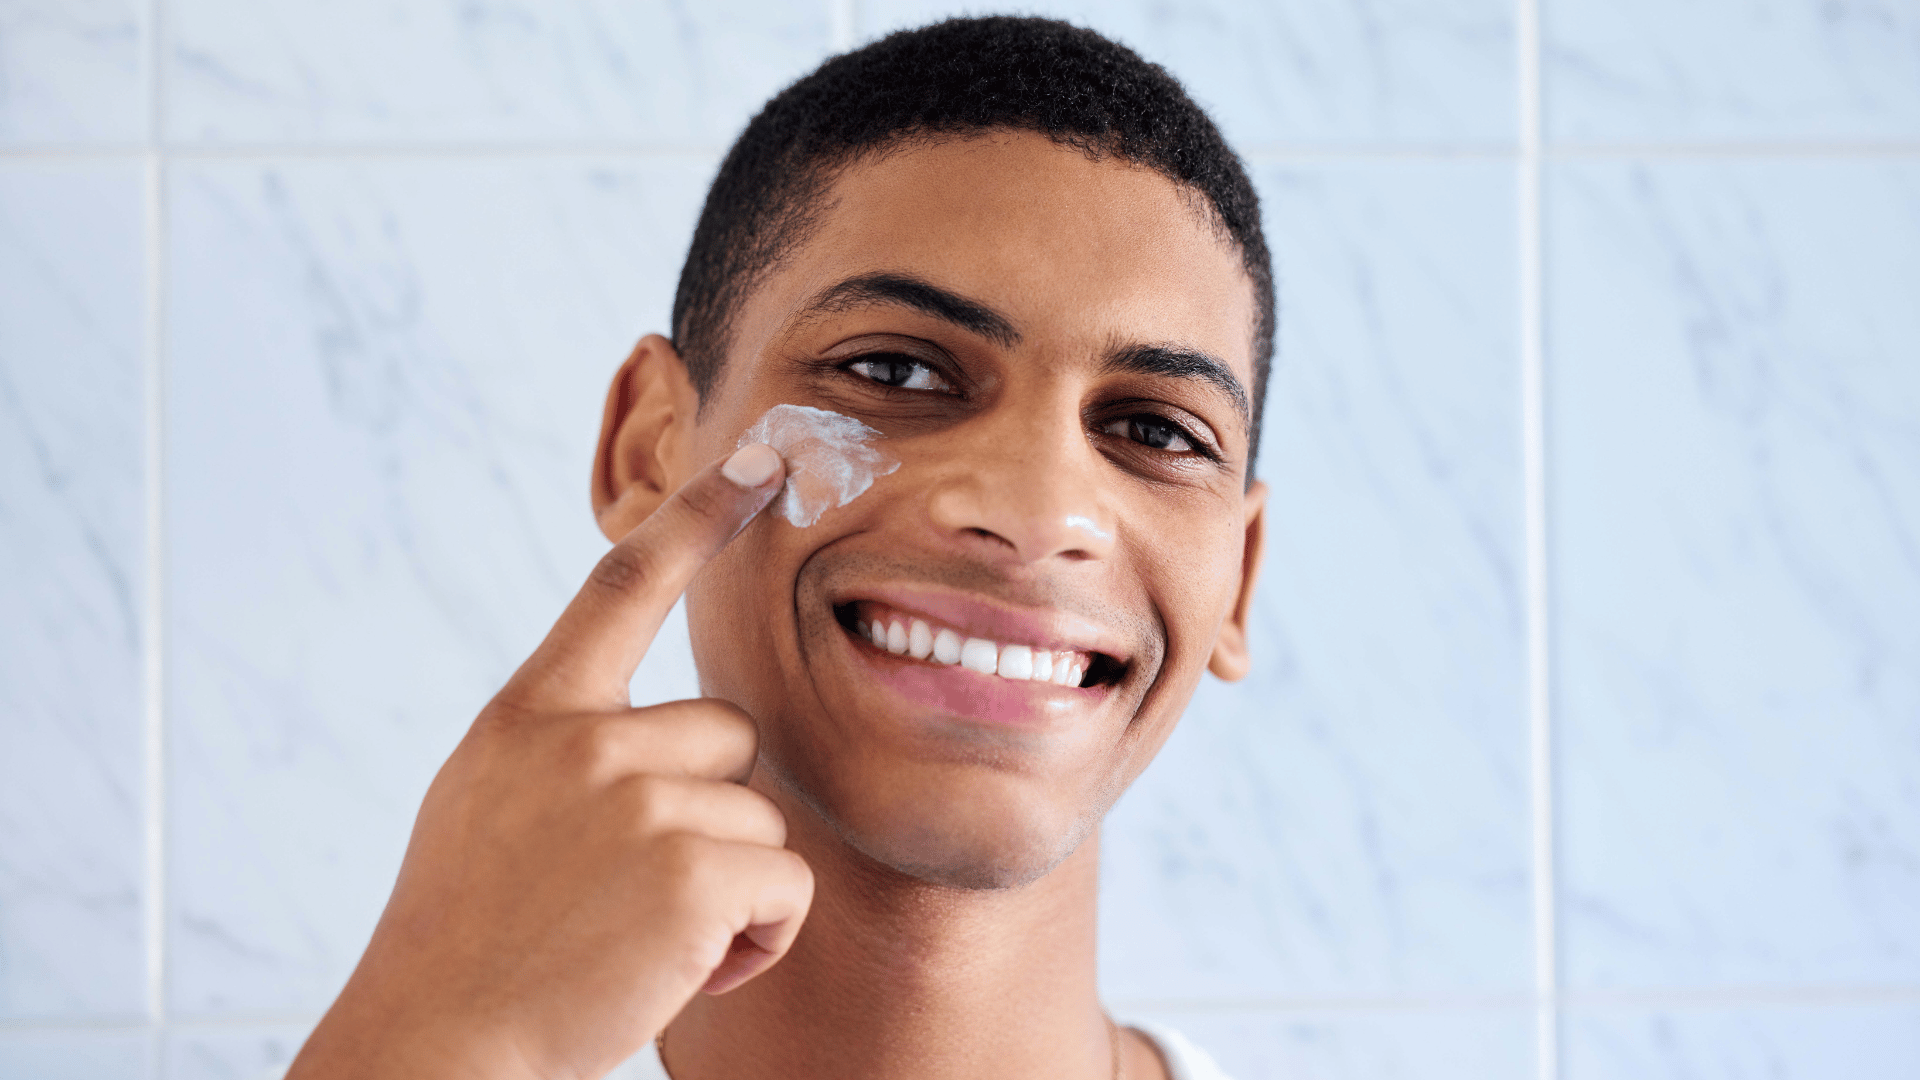 Oily skin care tips for guys